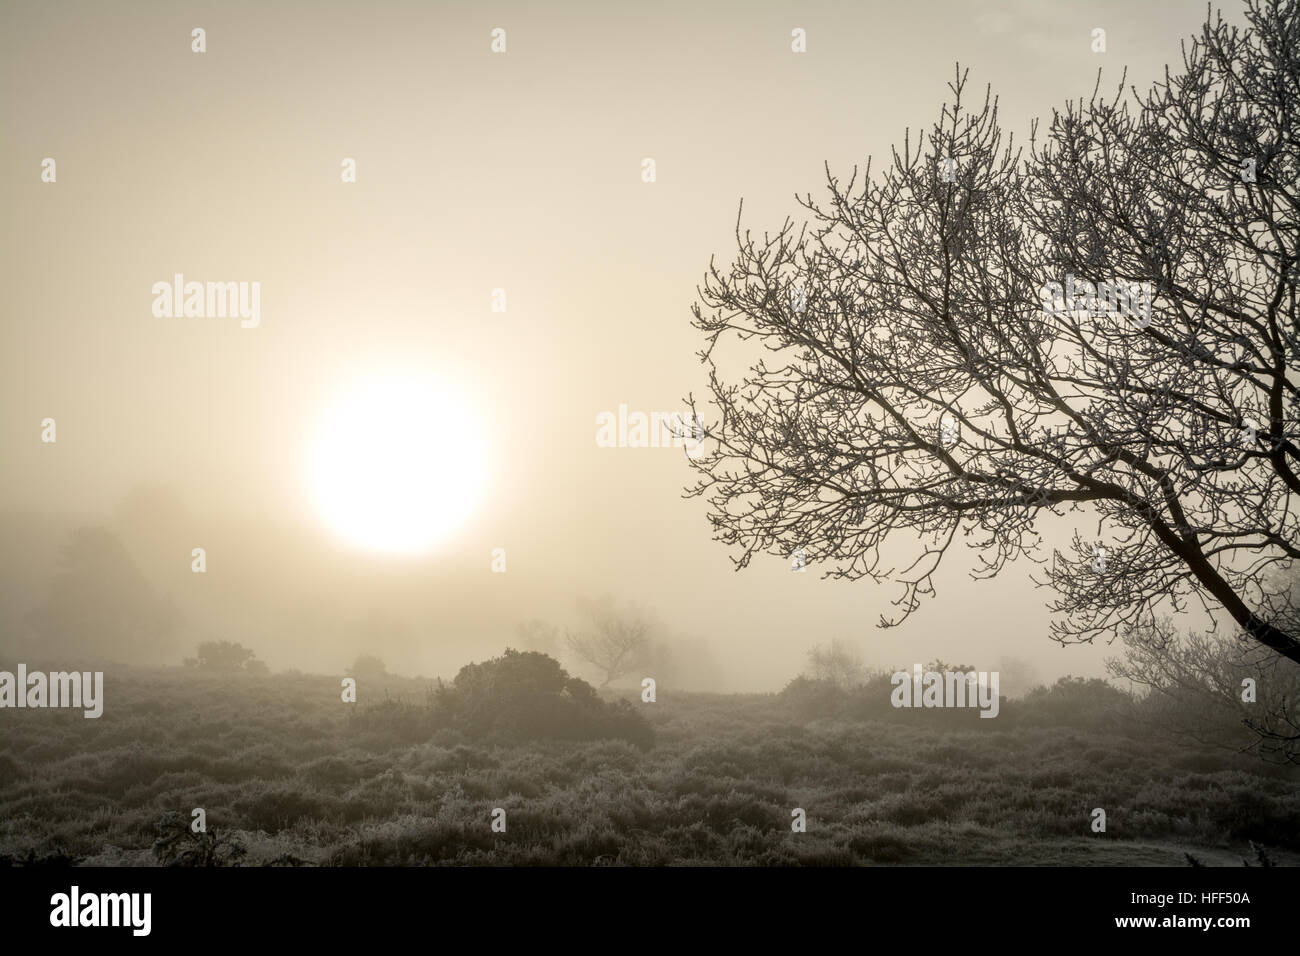 Winterlandschaft Szene von Heide und Bäumen im eisigen Nebel. Frensham Common in der Surrey Hills Area of Outstanding Natural Beauty, Großbritannien. Stockfoto